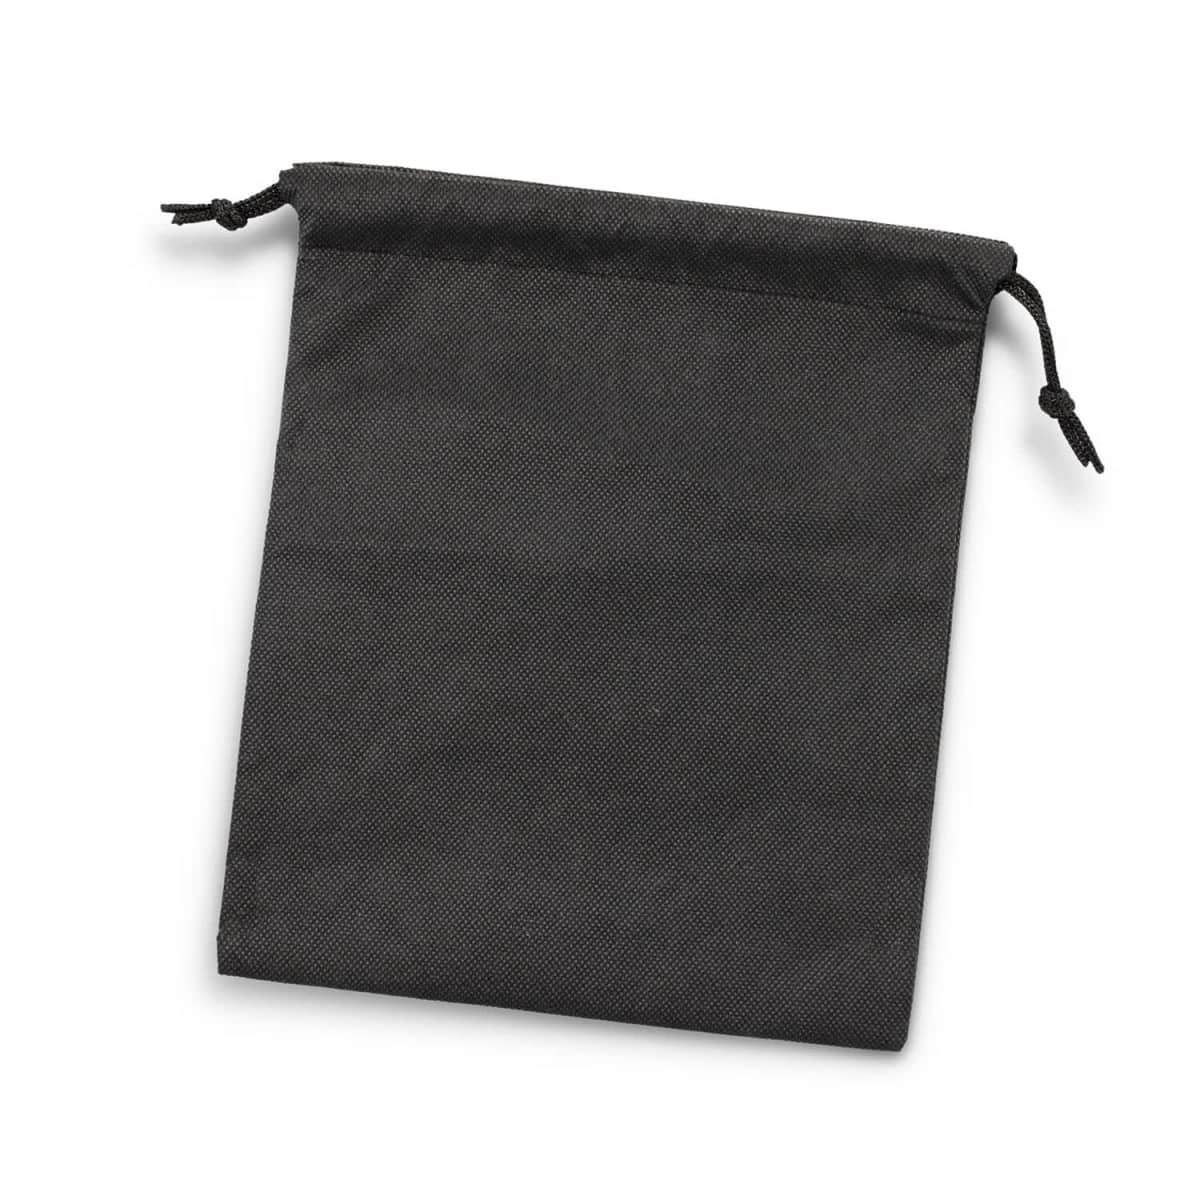 Drawstring Gift Bag - Medium